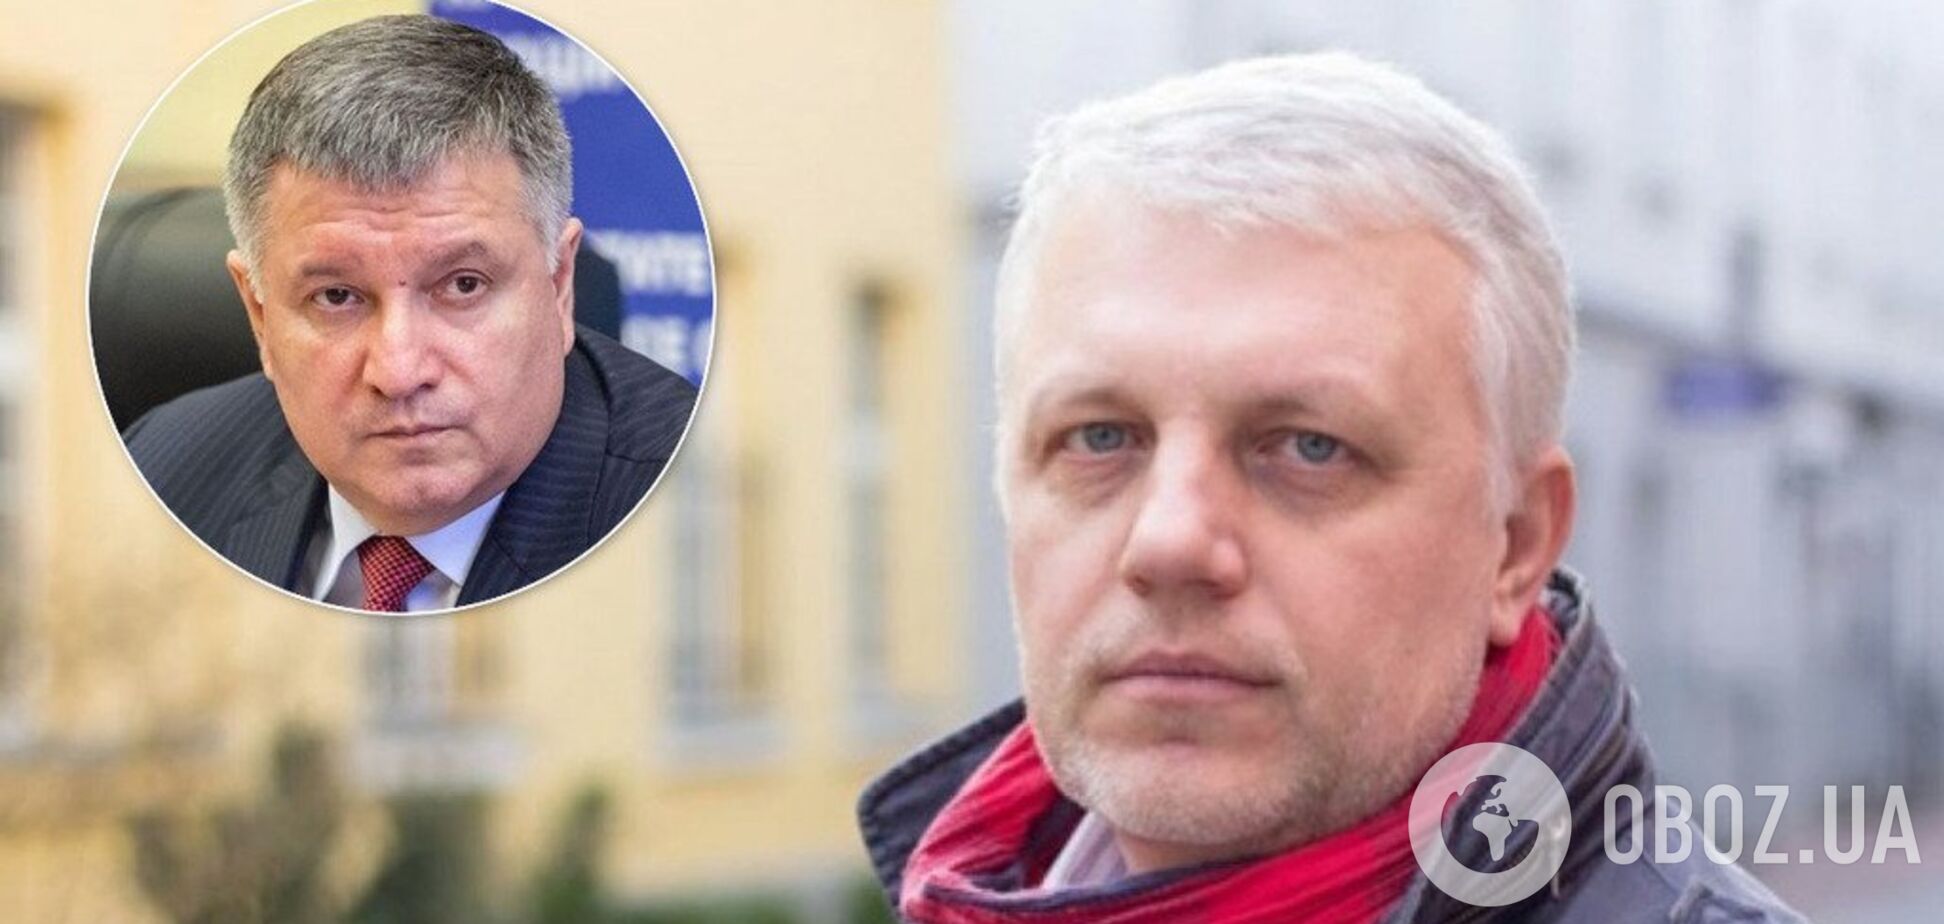 Министр внутренних дел Украины Арсен Аваков и погибший журналист Павел Шеремет